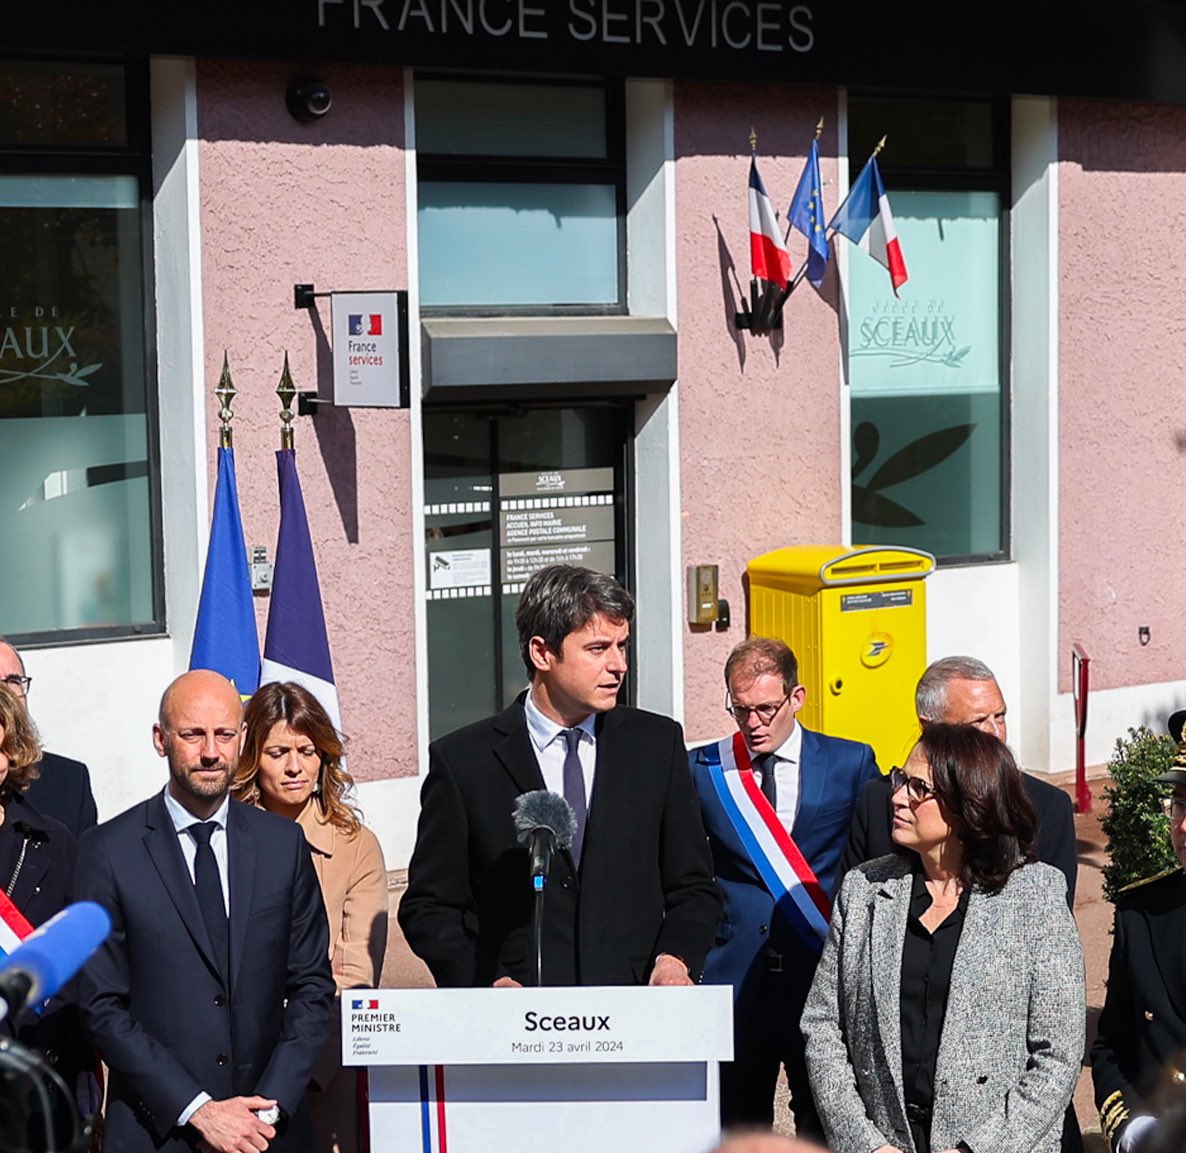 Avec @GabrielAttal, nous étions ce matin à la maison France services de Sceaux. Les Français veulent plus de services publics de proximité avec des voix et des visages. 95% des Français habitent aujourd’hui à moins de 20 minutes d’une maison France services. Nous avons décidé